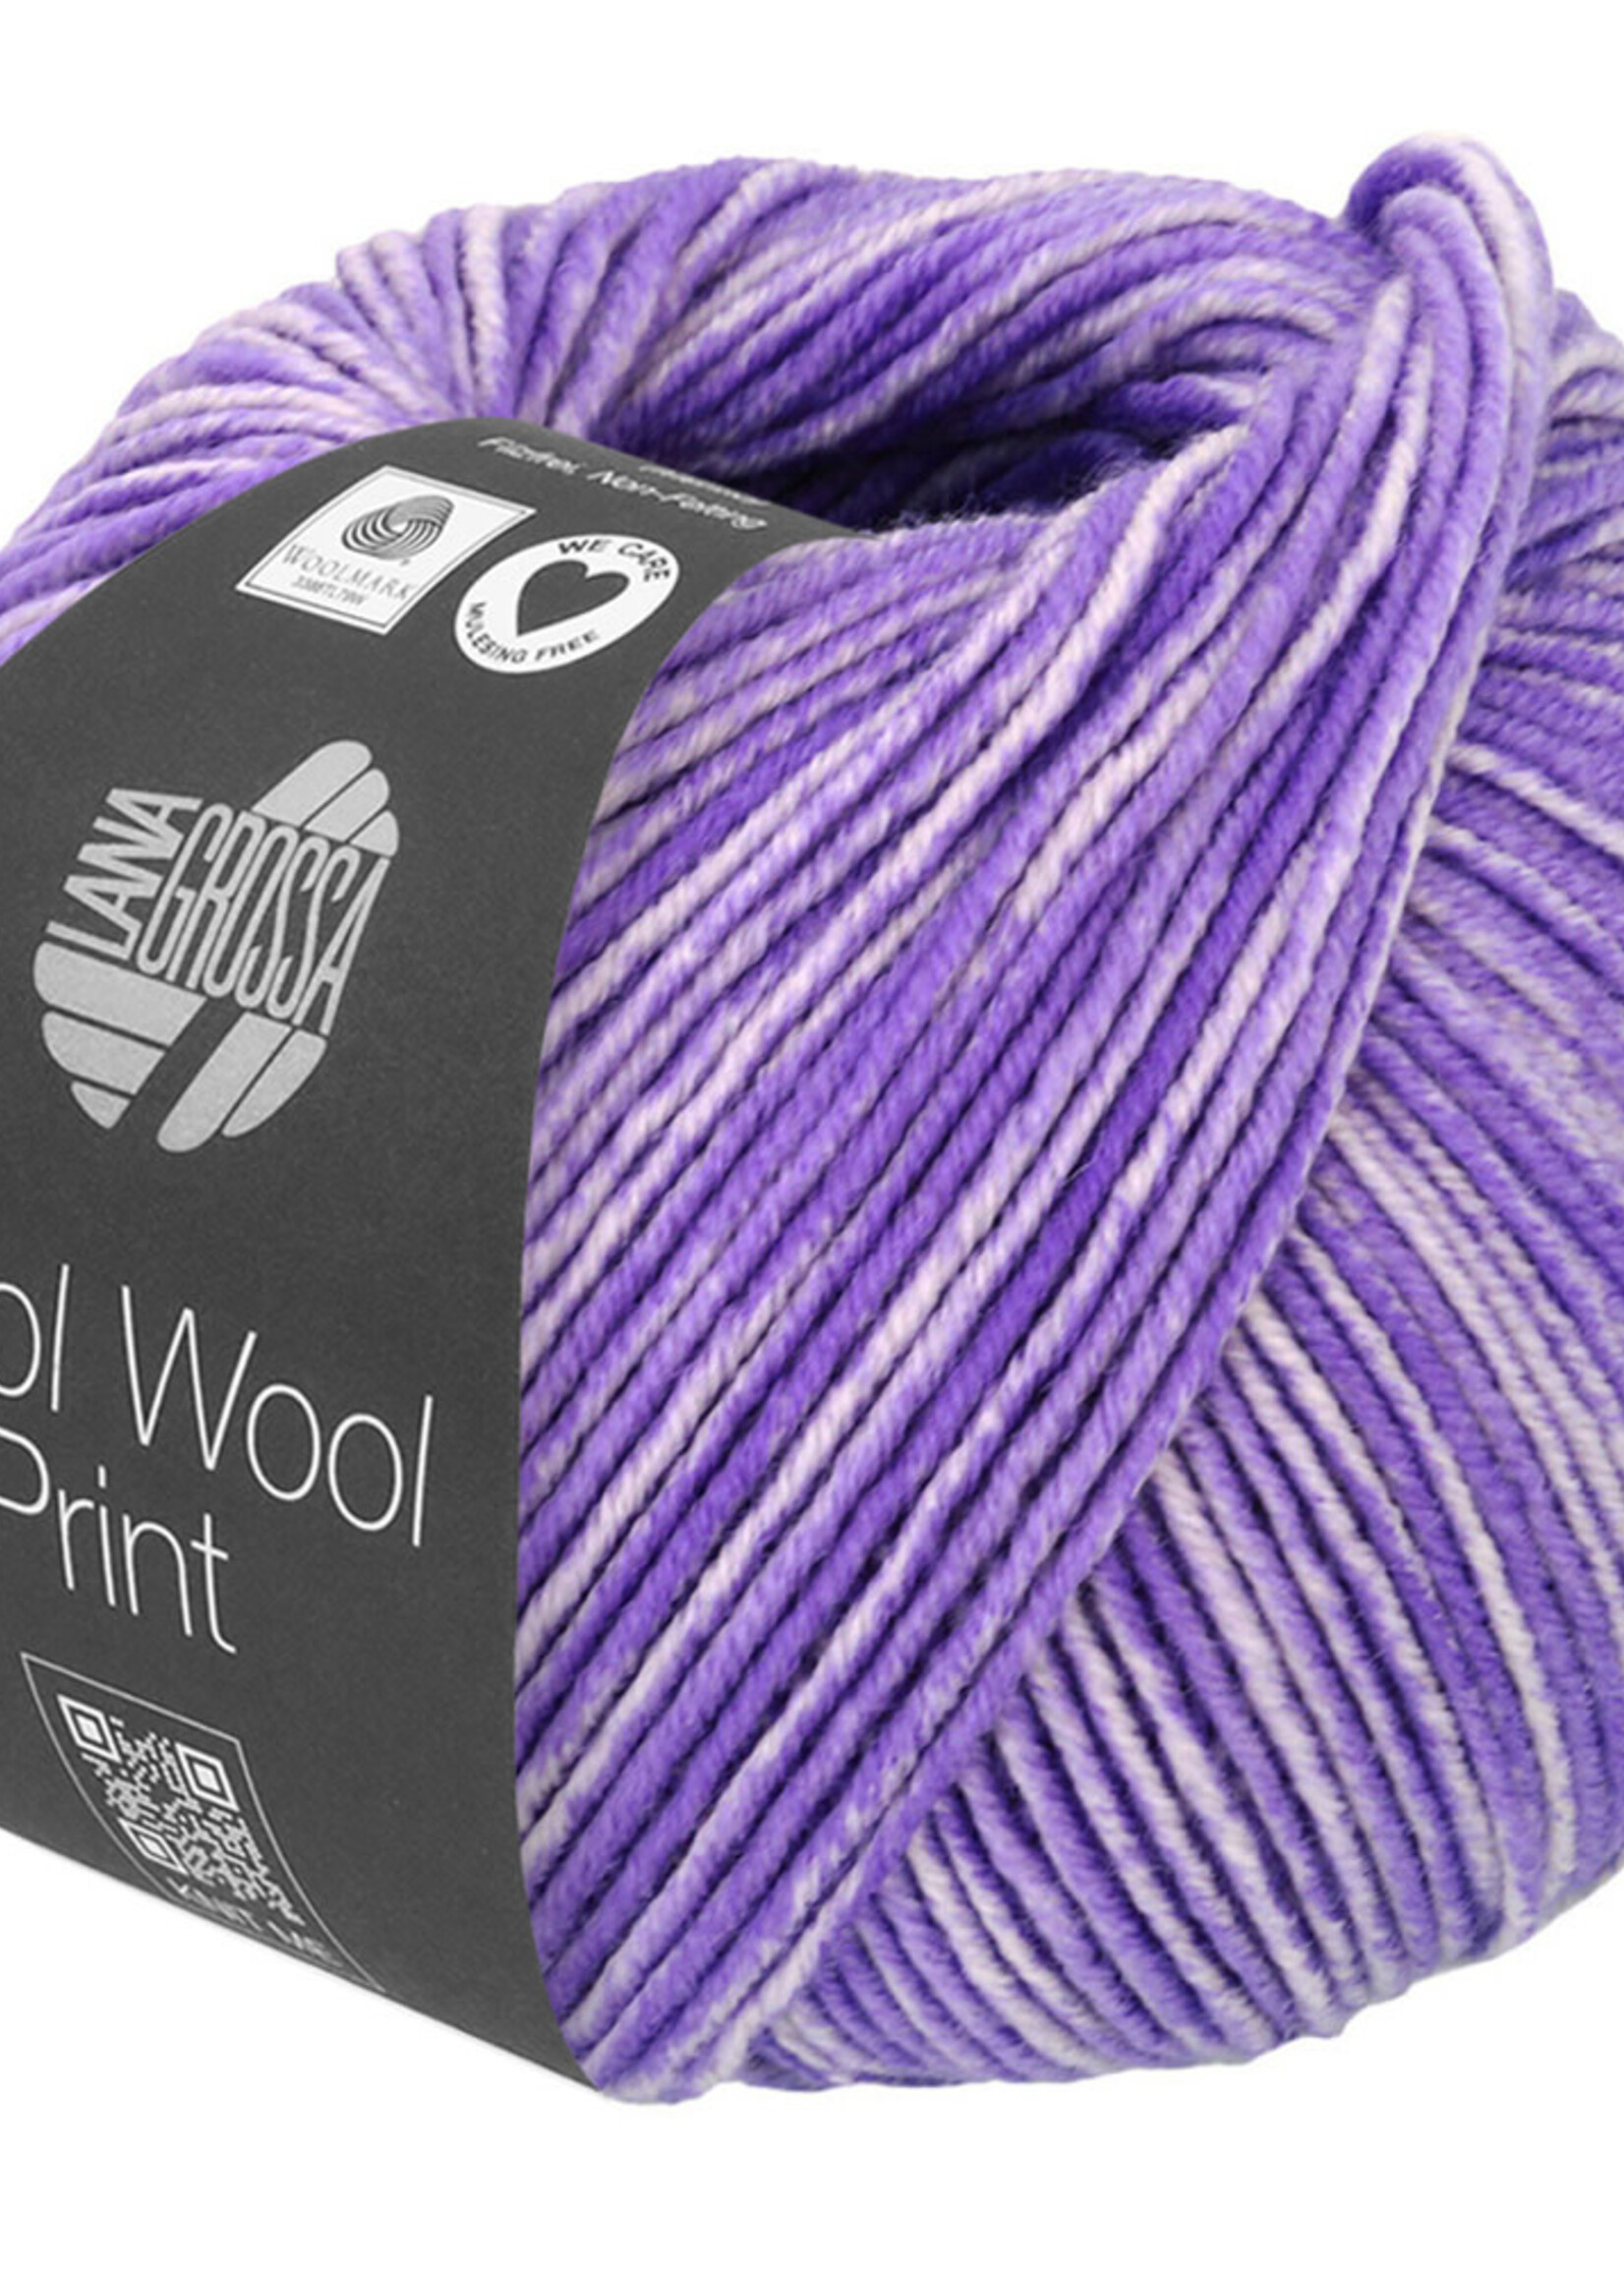 Lana Grossa Cool Wool Neon Print - Lana Grossa 6524-neon paars/zachtpaars